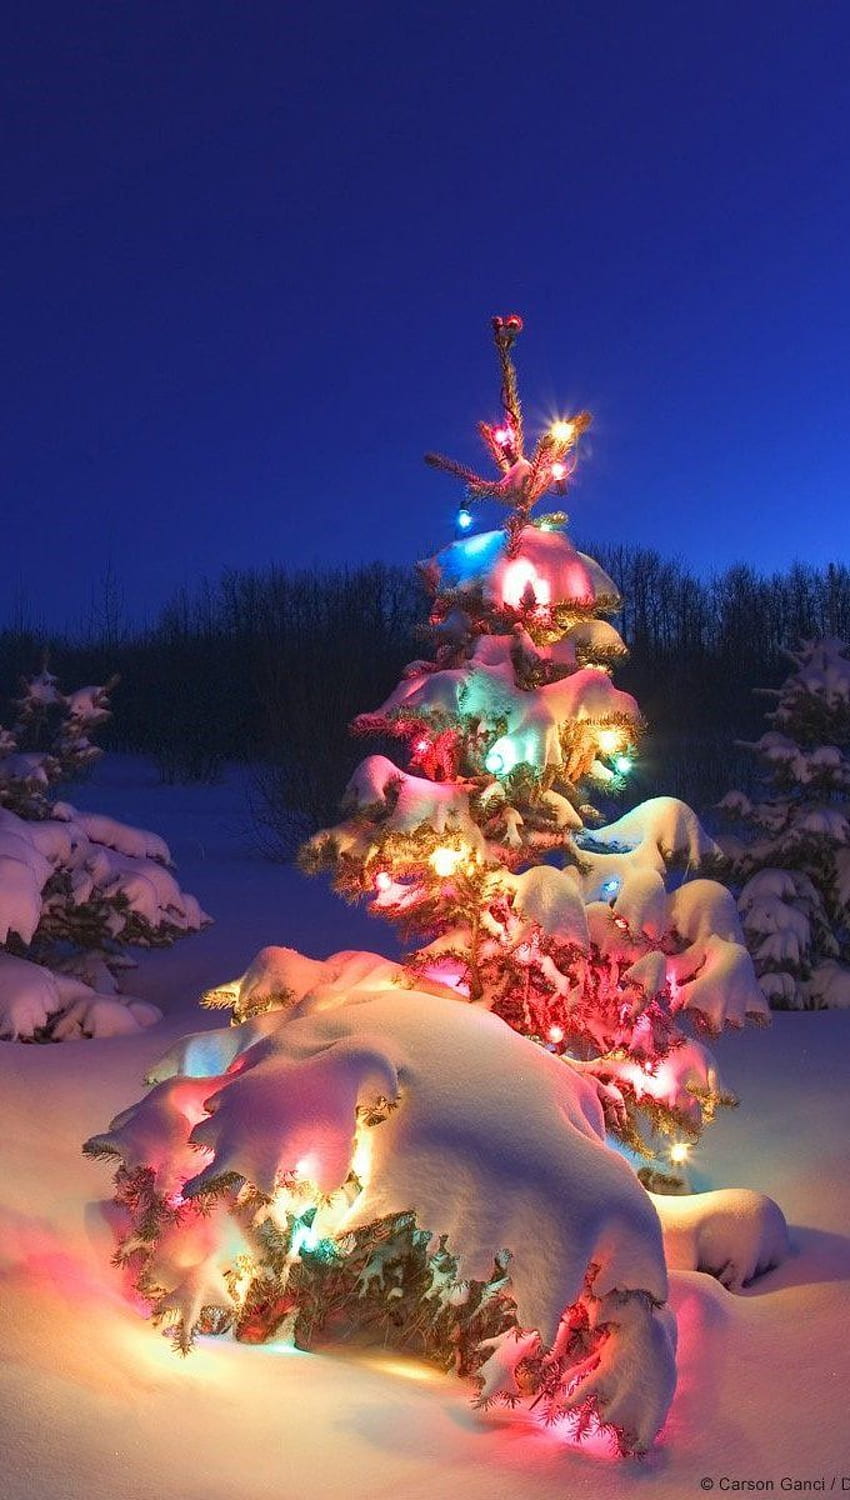 Cây thông đèn tại Bắc Cực: Hãy cùng đến vùng đất hoang sơ Bắc Cực để tận hưởng những khoảnh khắc địa lý tuyệt đẹp. Các cây thông đèn đang rực rỡ lung linh với ánh sáng đầy màu sắc, tạo nên một không khí tuyệt vời cho mùa lễ hội Giáng sinh. Điểm đến này chắc chắn sẽ mang lại cho bạn những trải nghiệm tuyệt vời.